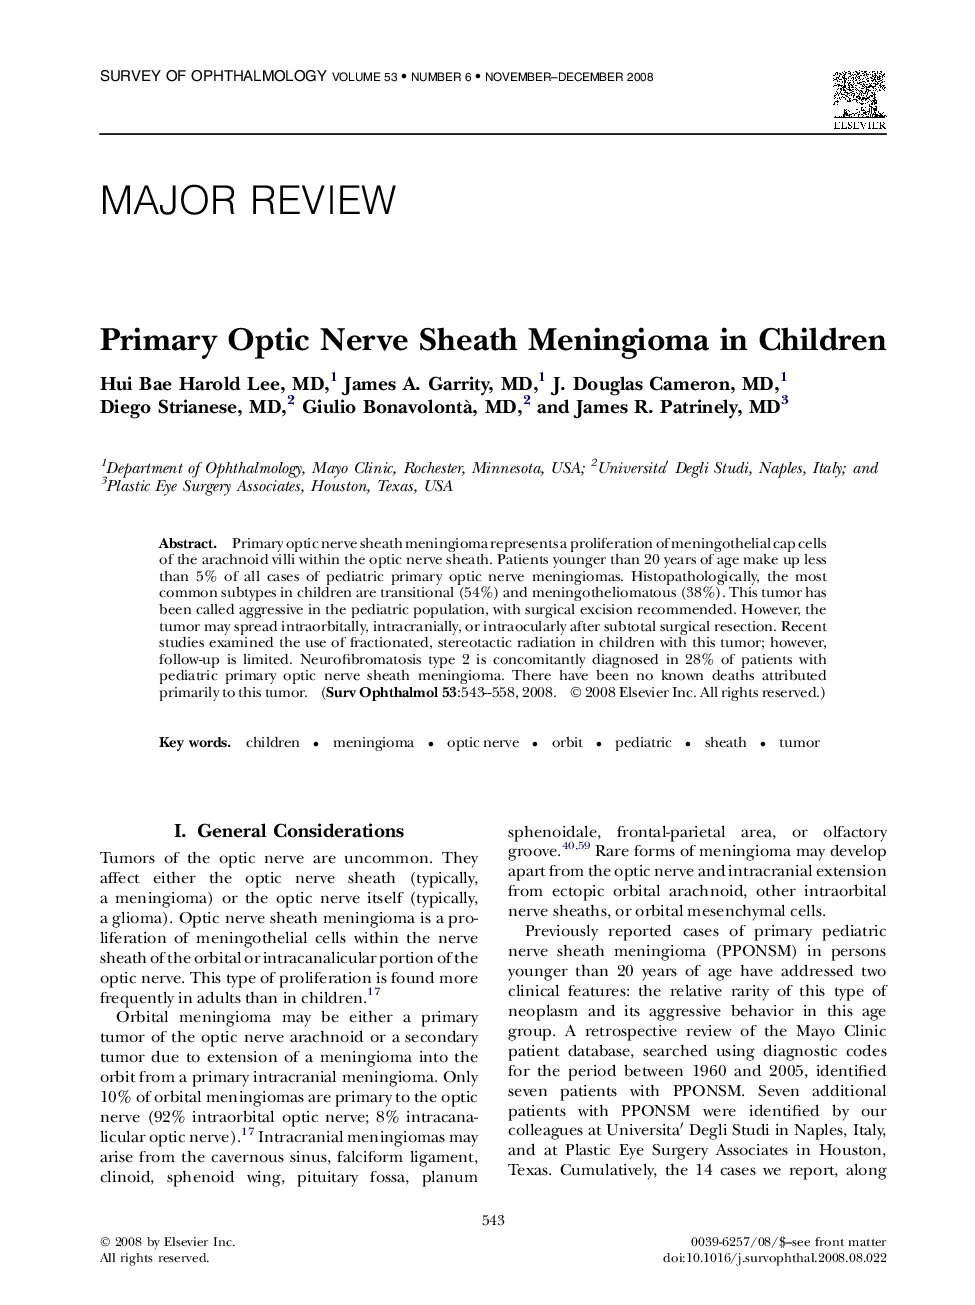 Primary Optic Nerve Sheath Meningioma in Children 